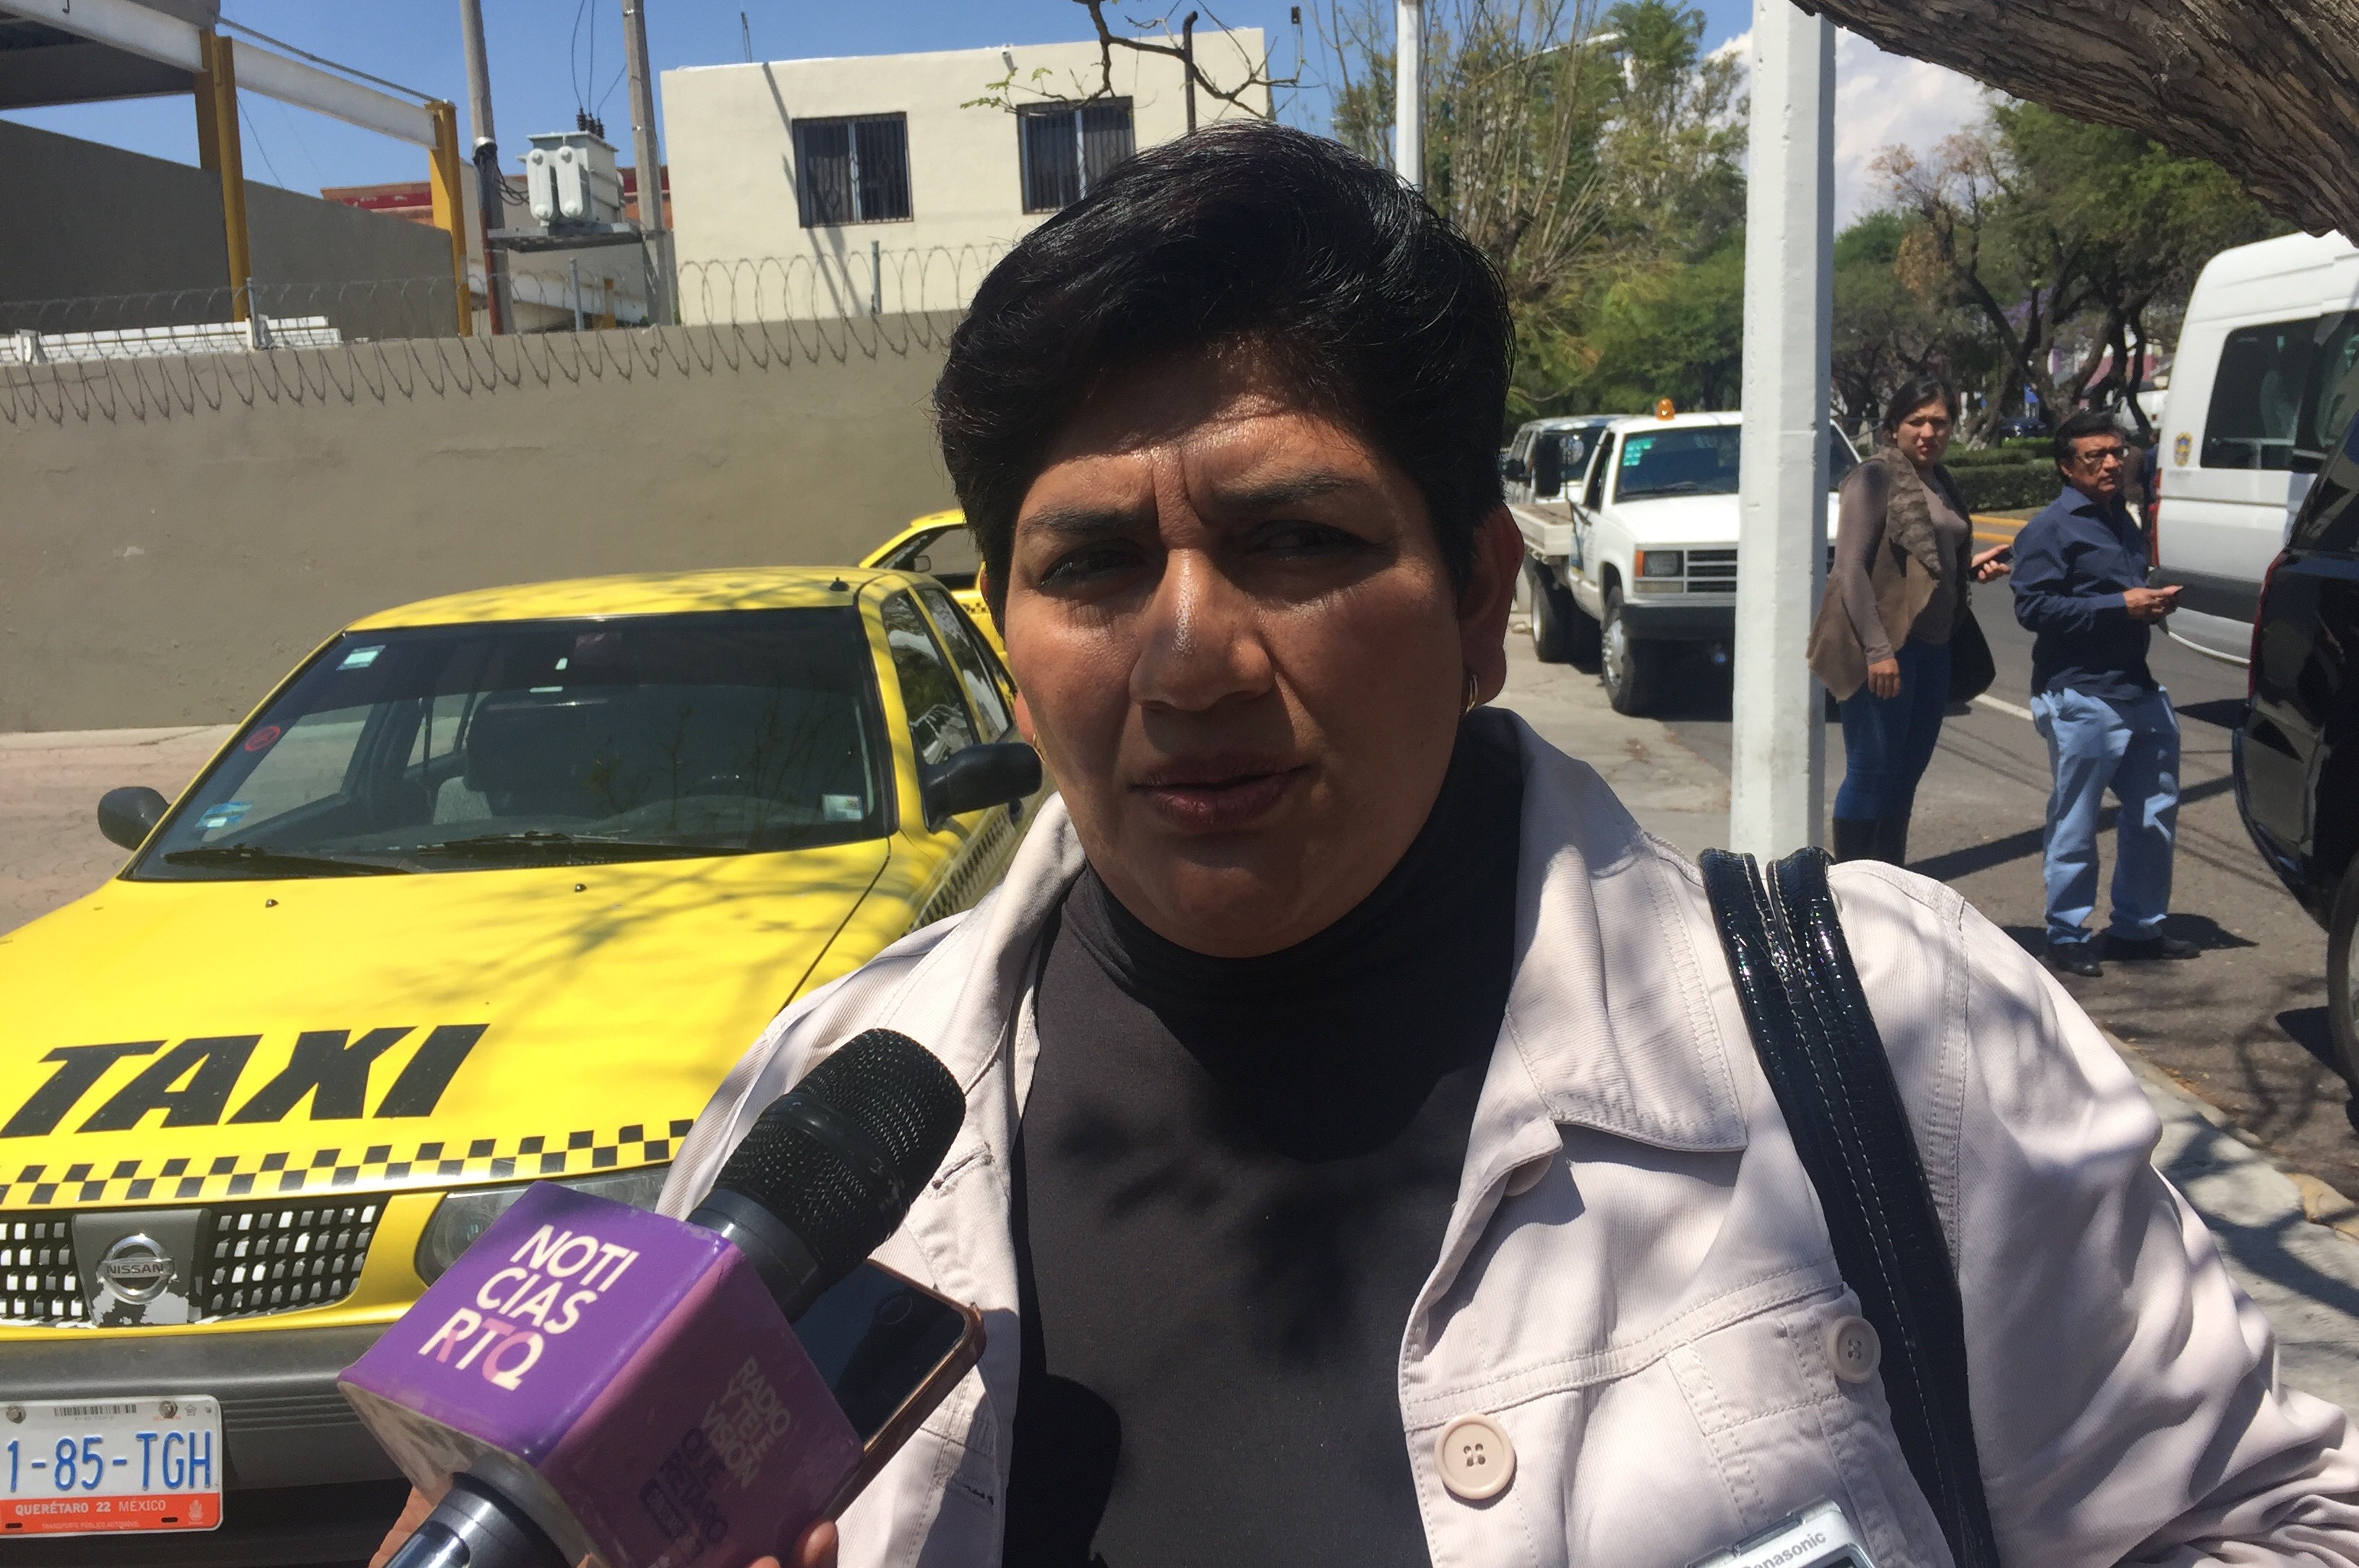  Tianguistas piden más planeación para gestionar espacios en el municipio de Querétaro